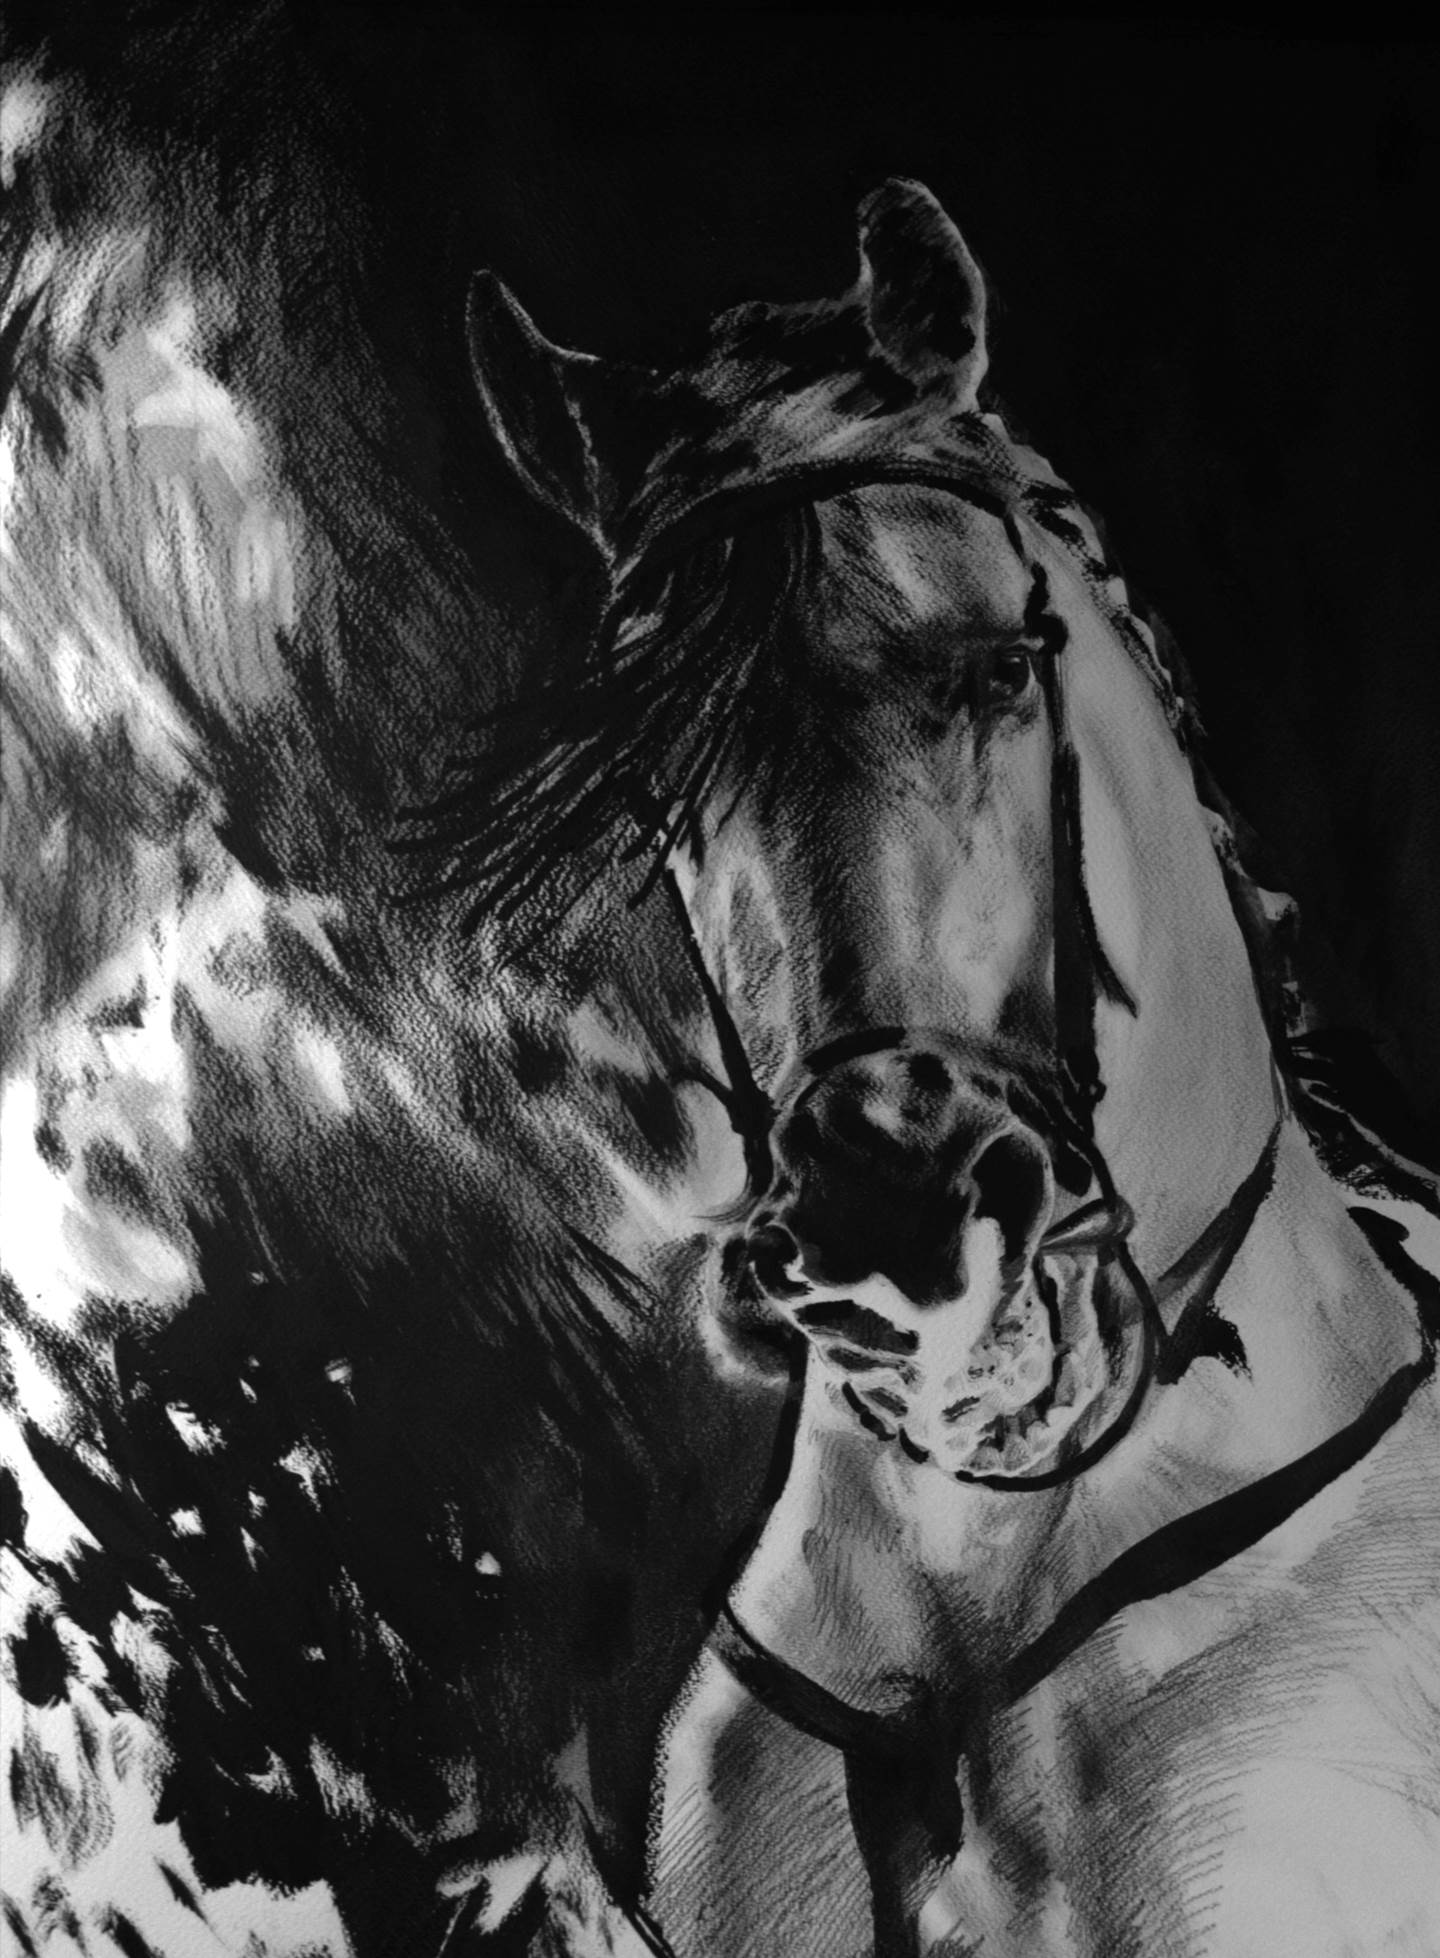 Fire Horse I, original Animales Técnica Mixta Pintura de BeckenFilipe .